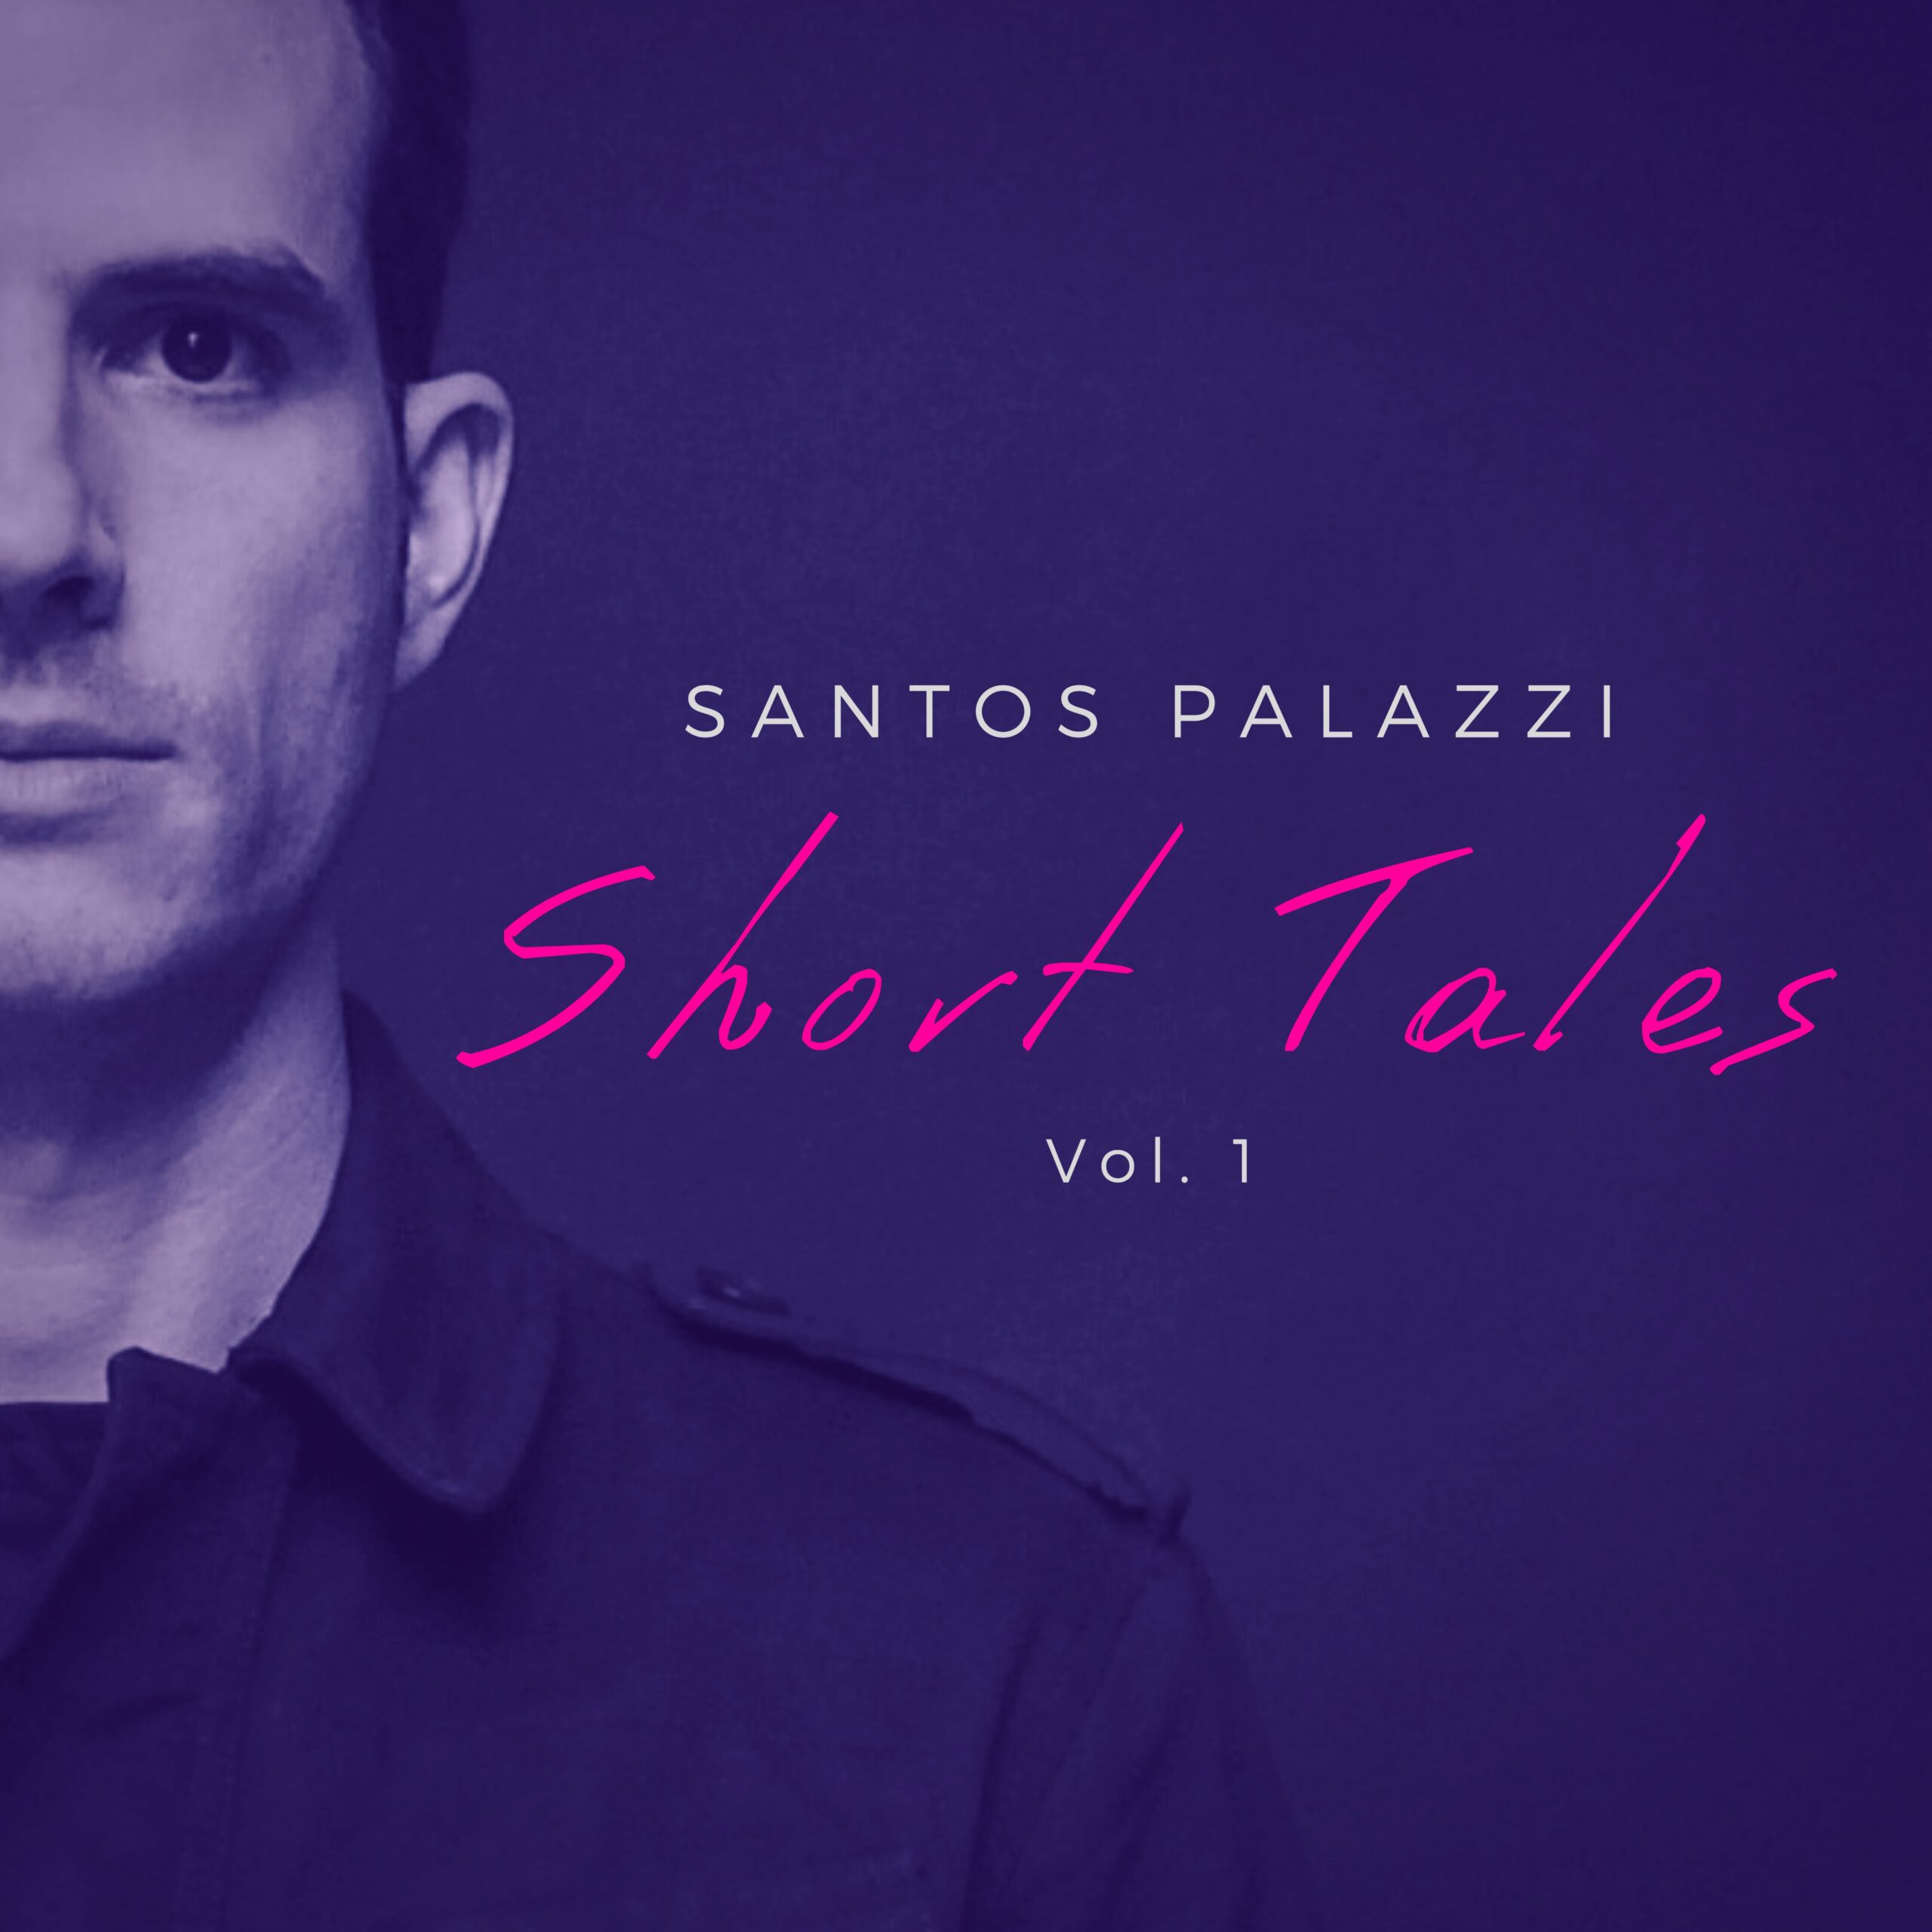 Conoce a Santos Palazzi, el compositor venezolano que se abre camino en Hollywood